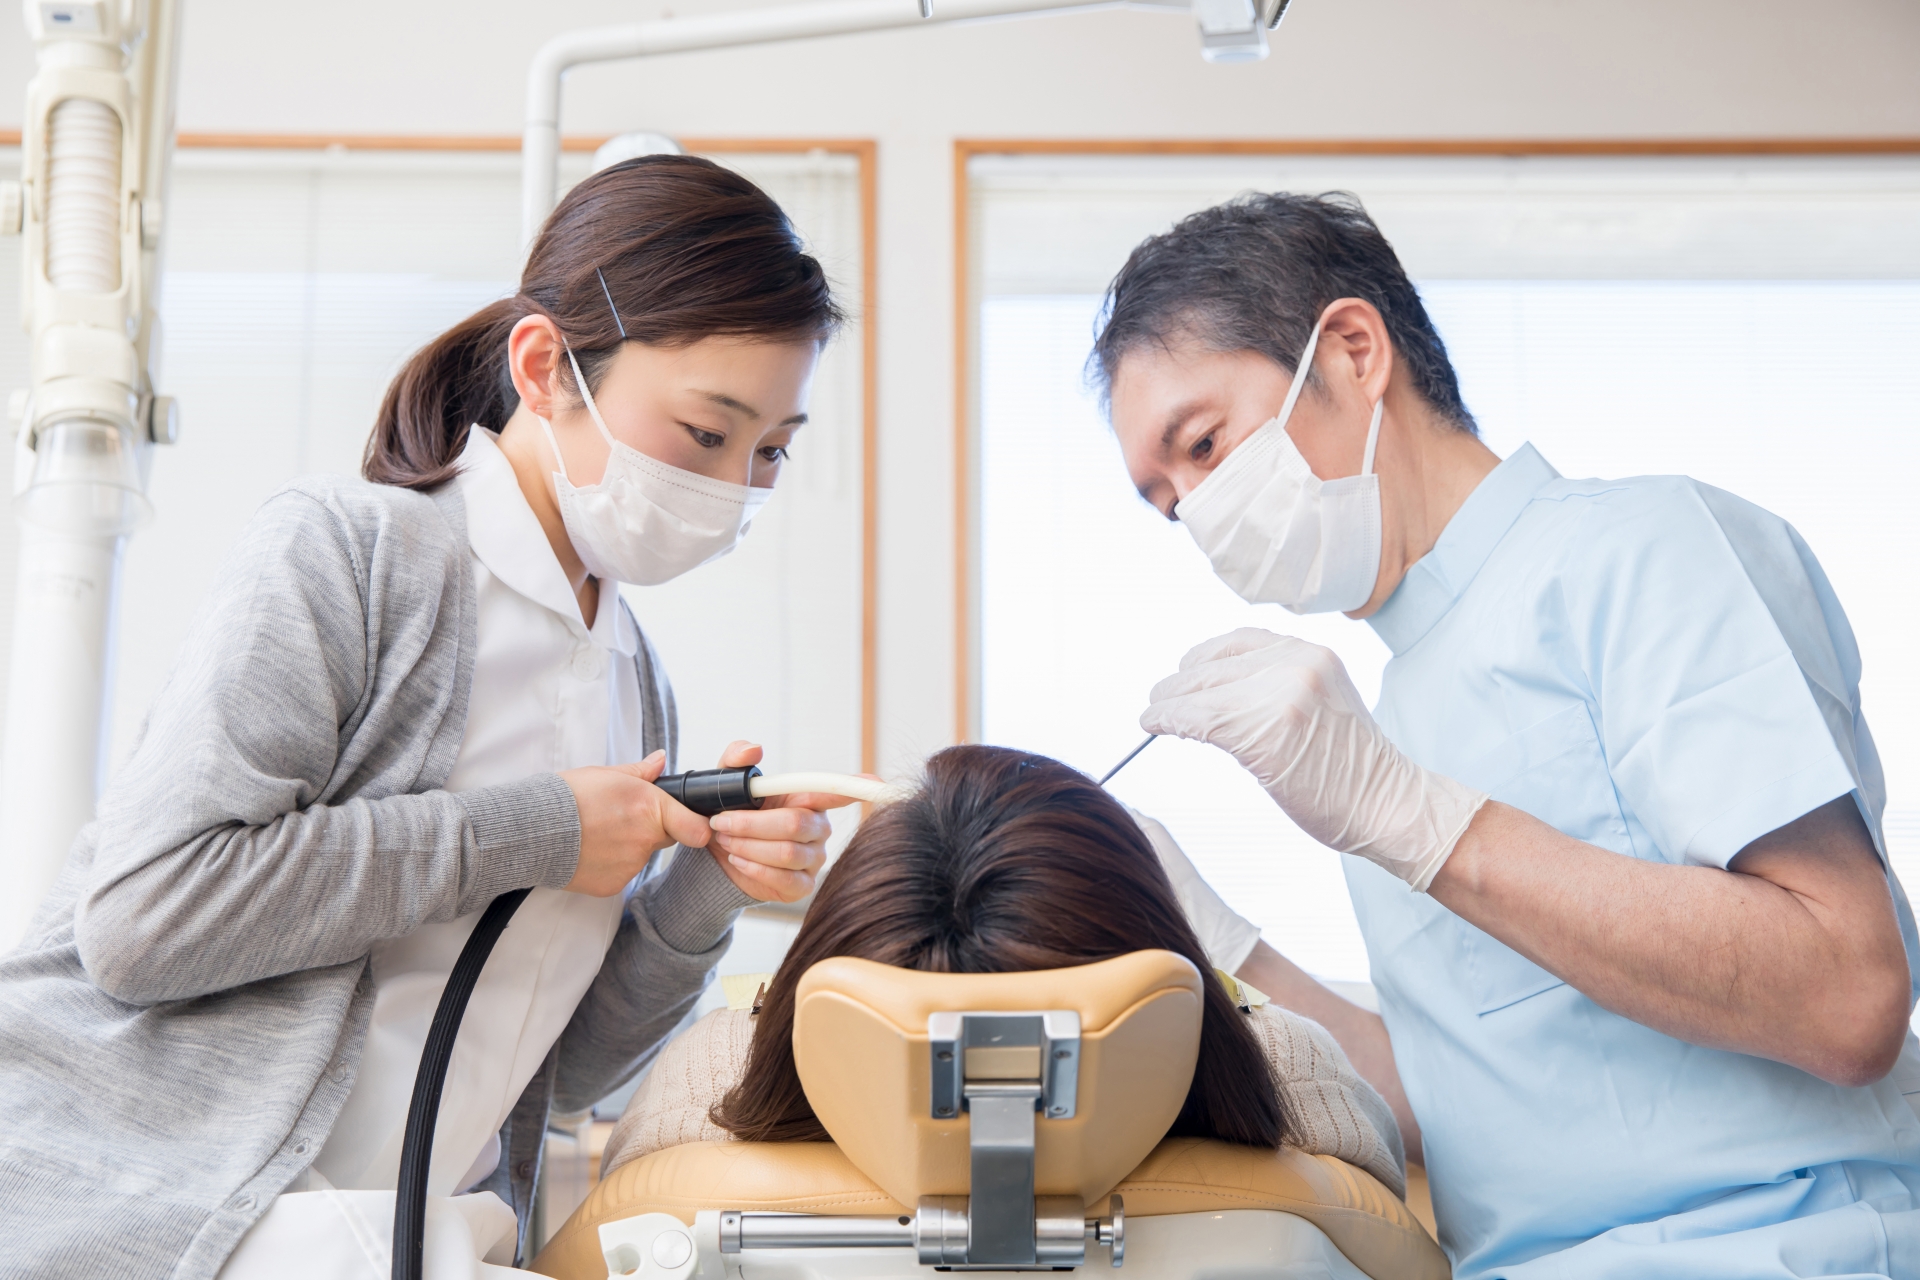 歯の健康維持には定期的に歯医者へ行くことがおすすめ